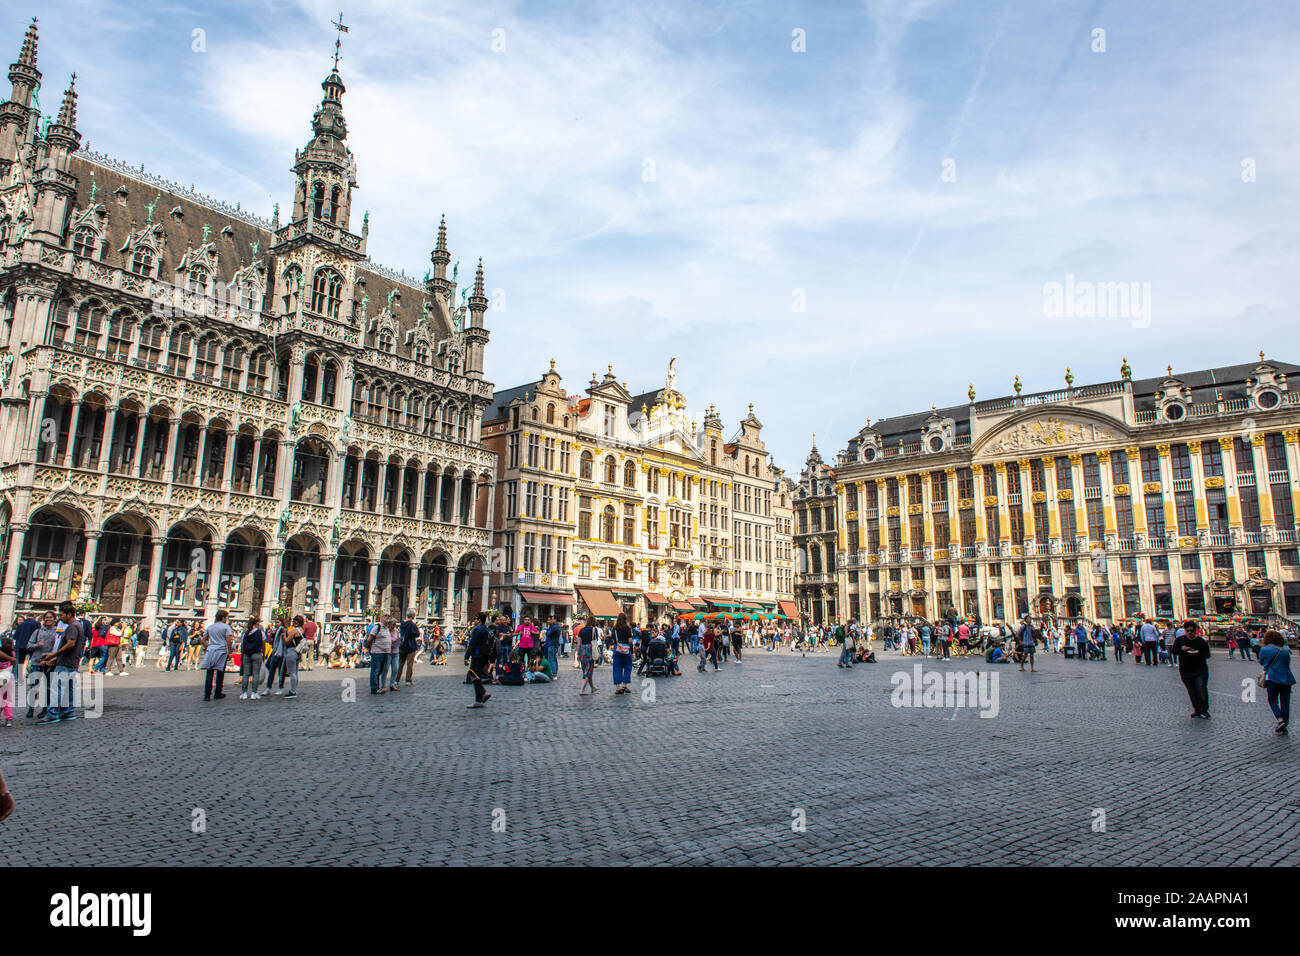 Le musée de la ville de Bruxelles situé dans la grand place, Bruxelles, Belgique. Banque D'Images